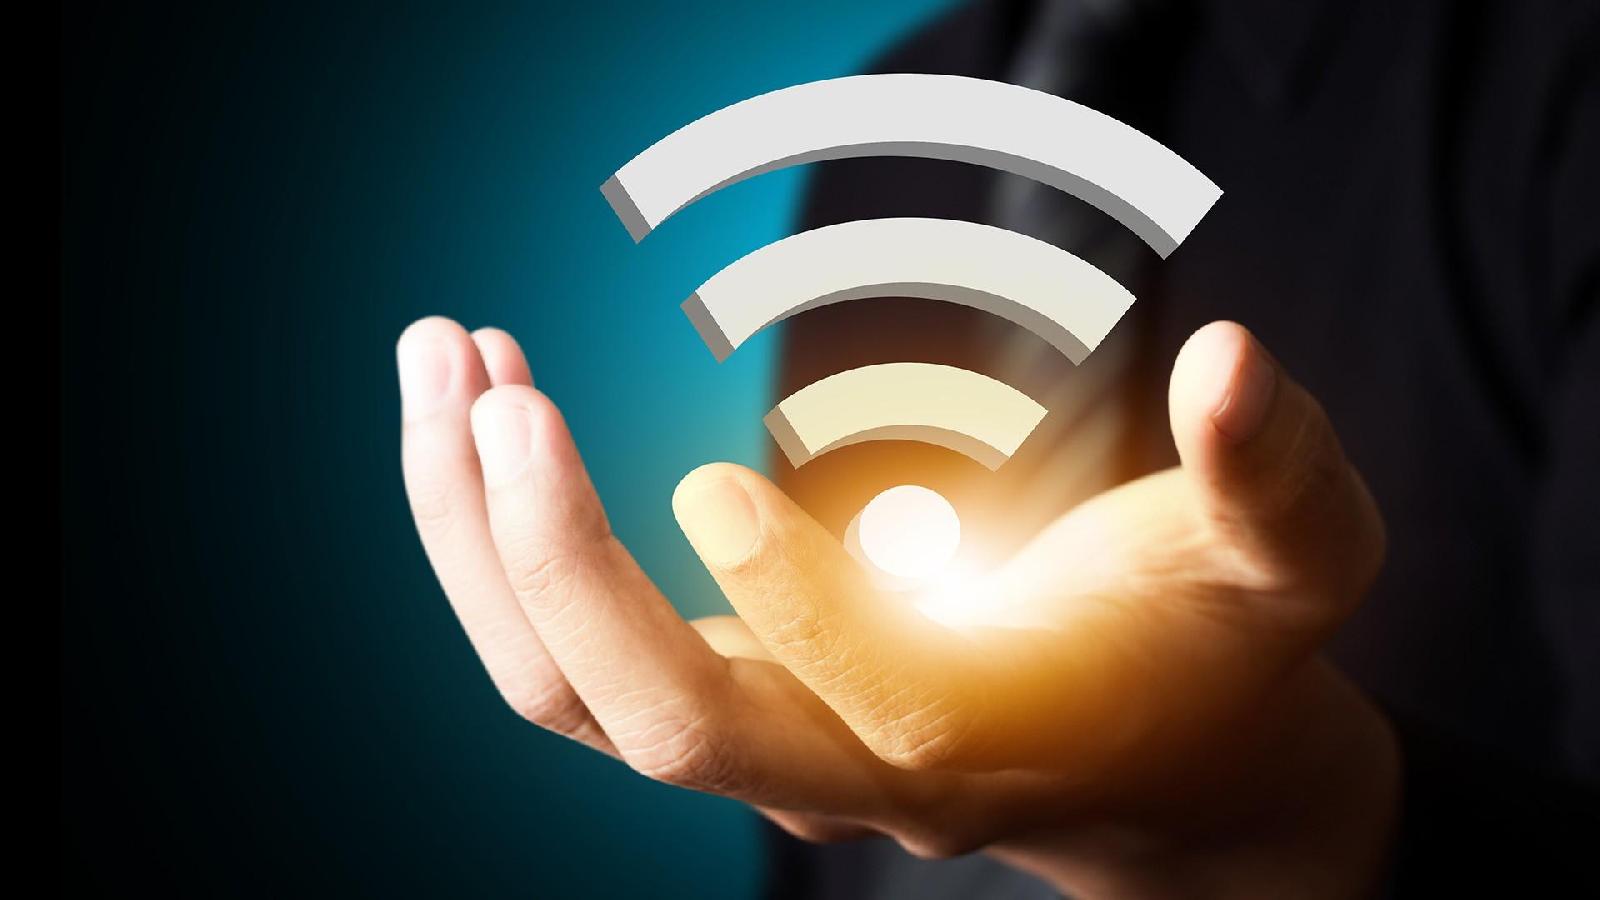 Dal divario digitale alla connessione universale, ecco qual è la missione di Piazza Wifi